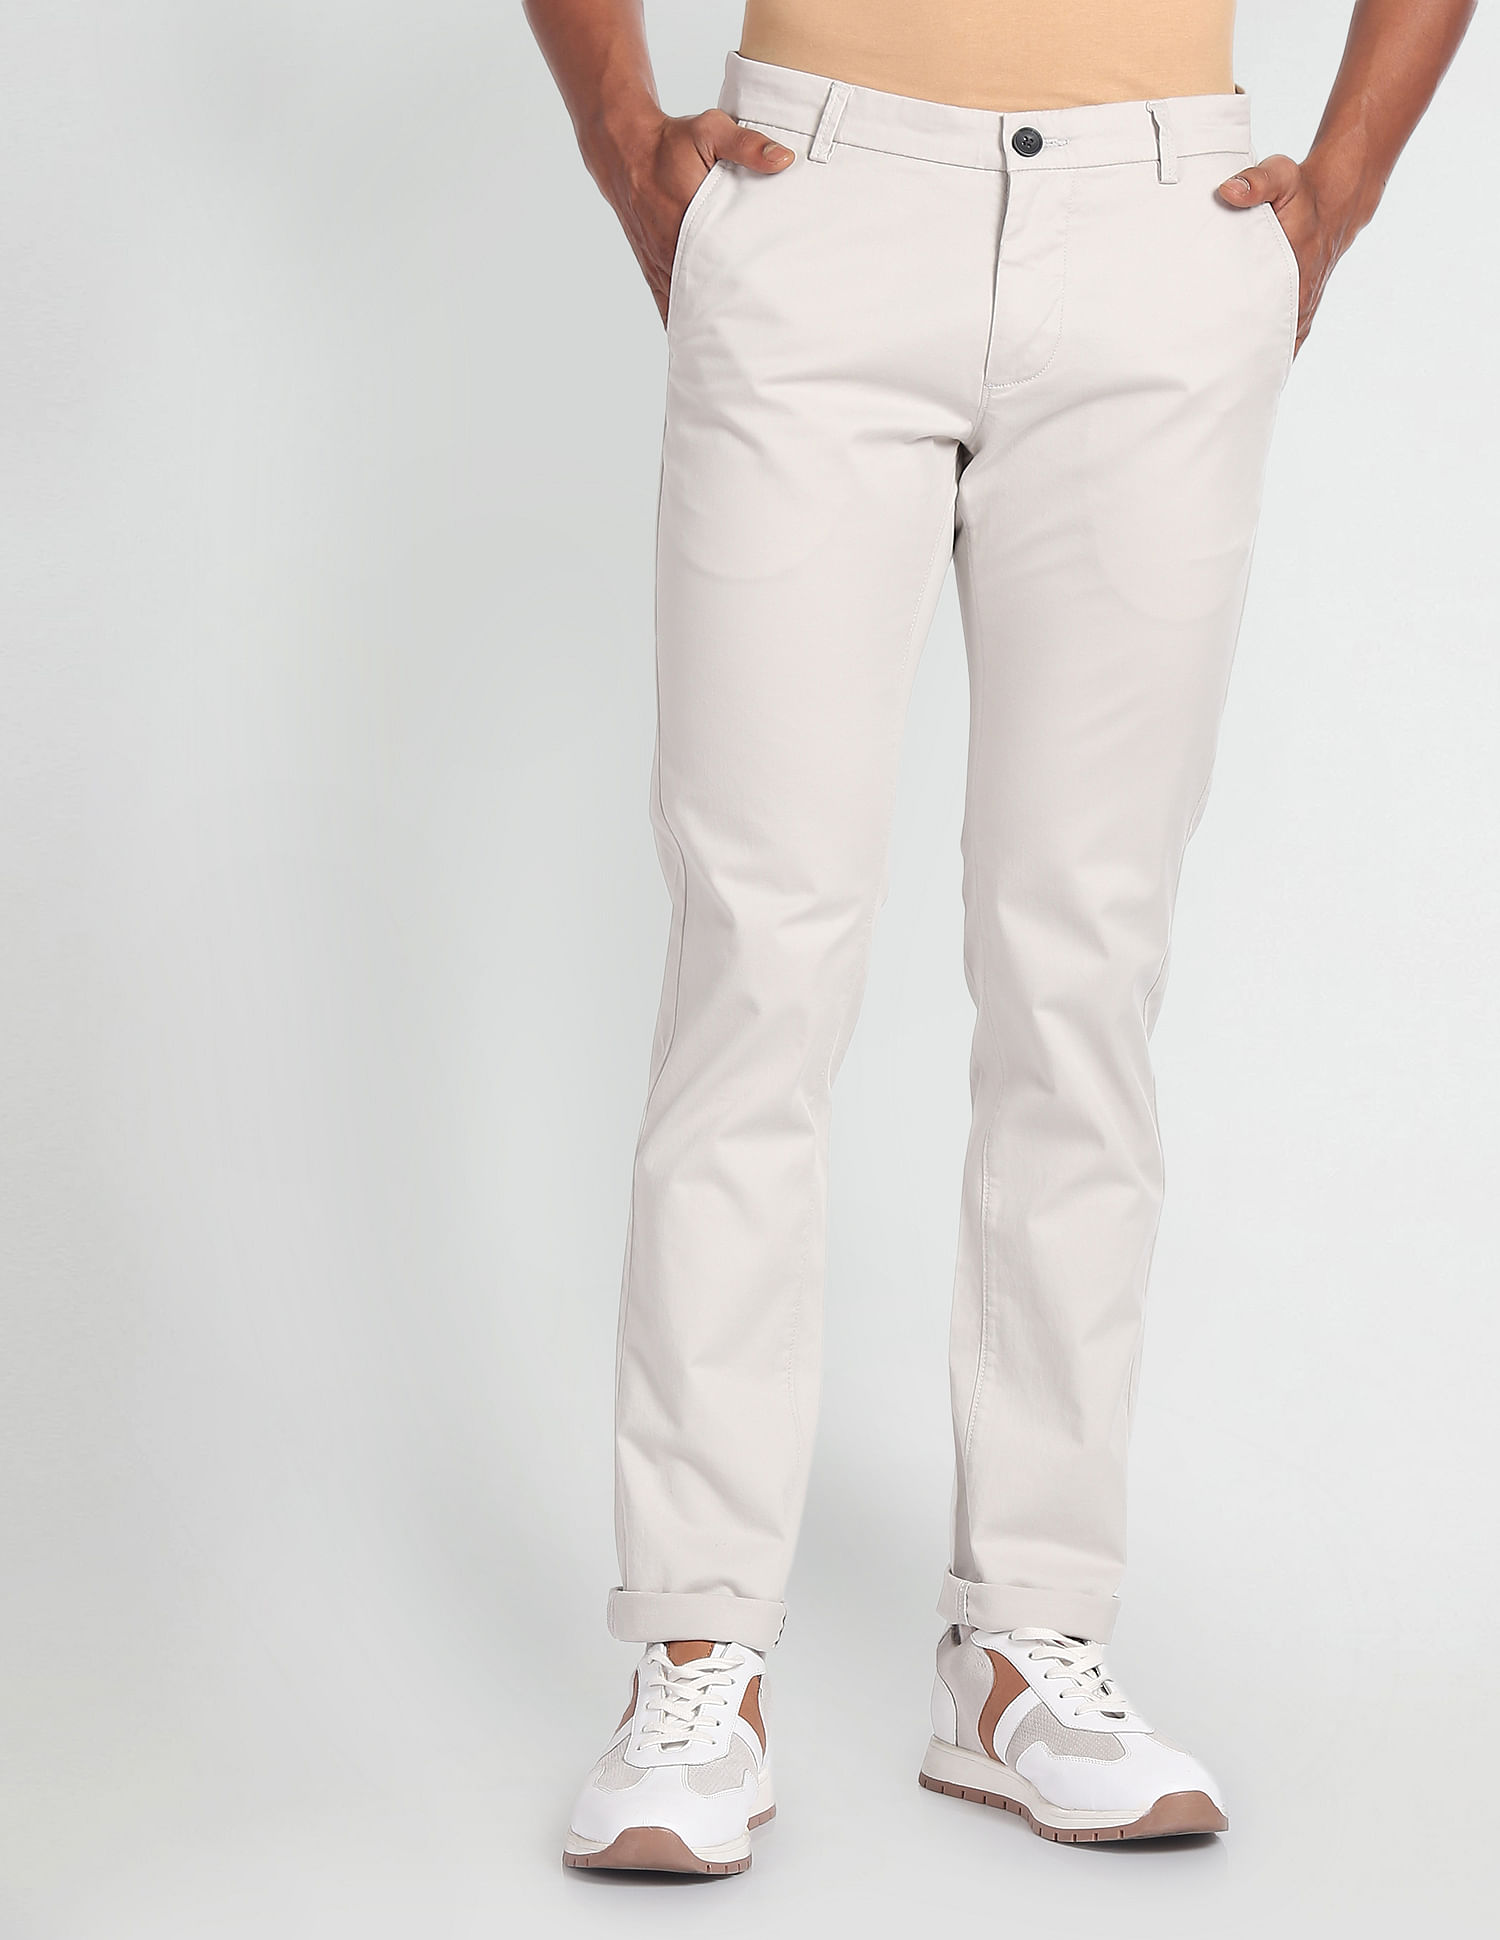 Buy ARROW SPORT Solid Cotton Blend Slim Fit Men's Trousers | Shoppers Stop